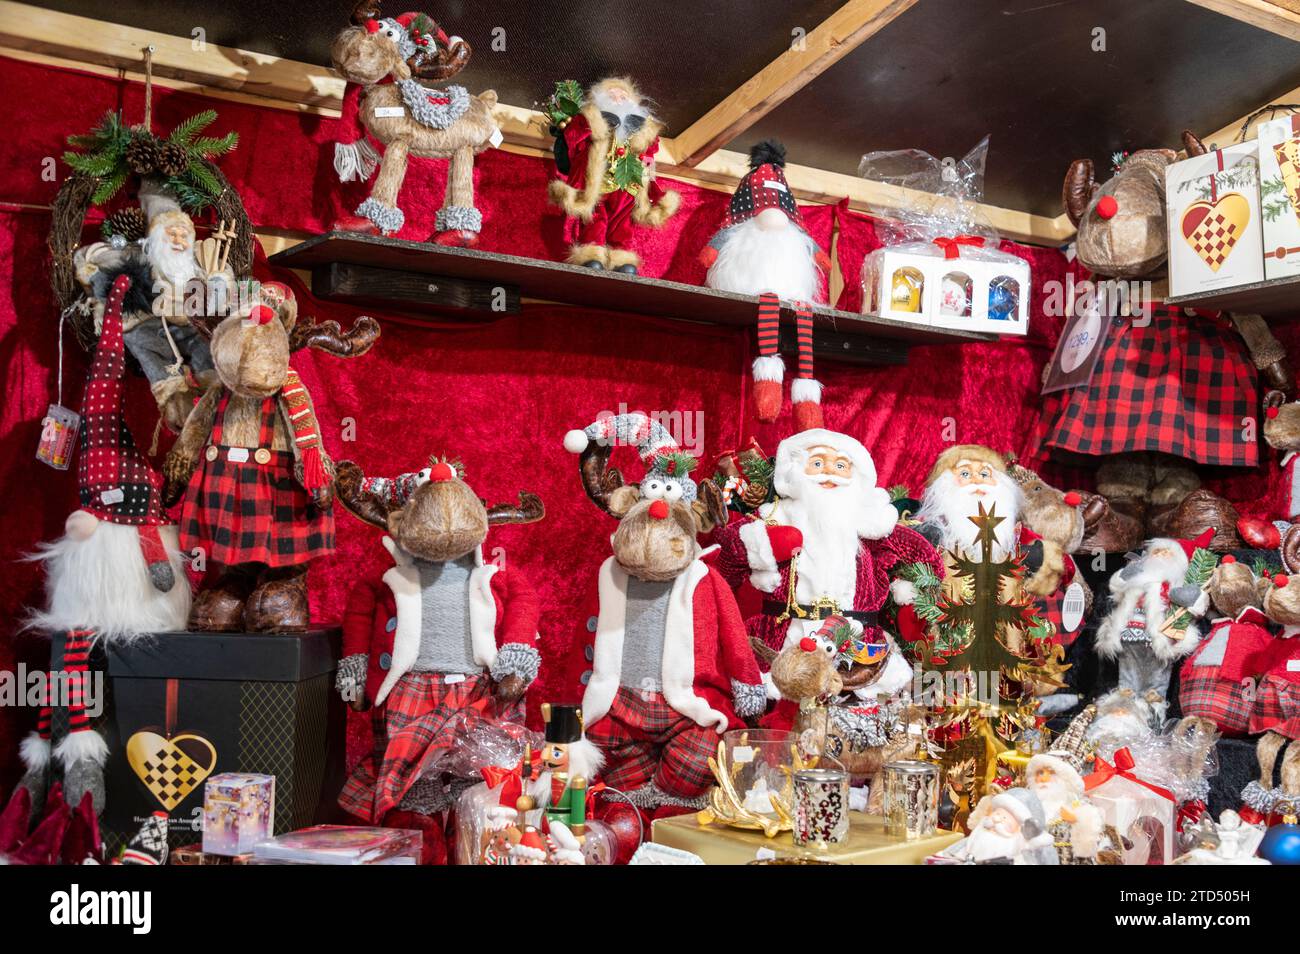 Handgemachte nordische Weihnachtsfiguren auf einem Julemark (Weihnachtsmarkt) in Kopenhagen in Dänemark. Stockfoto